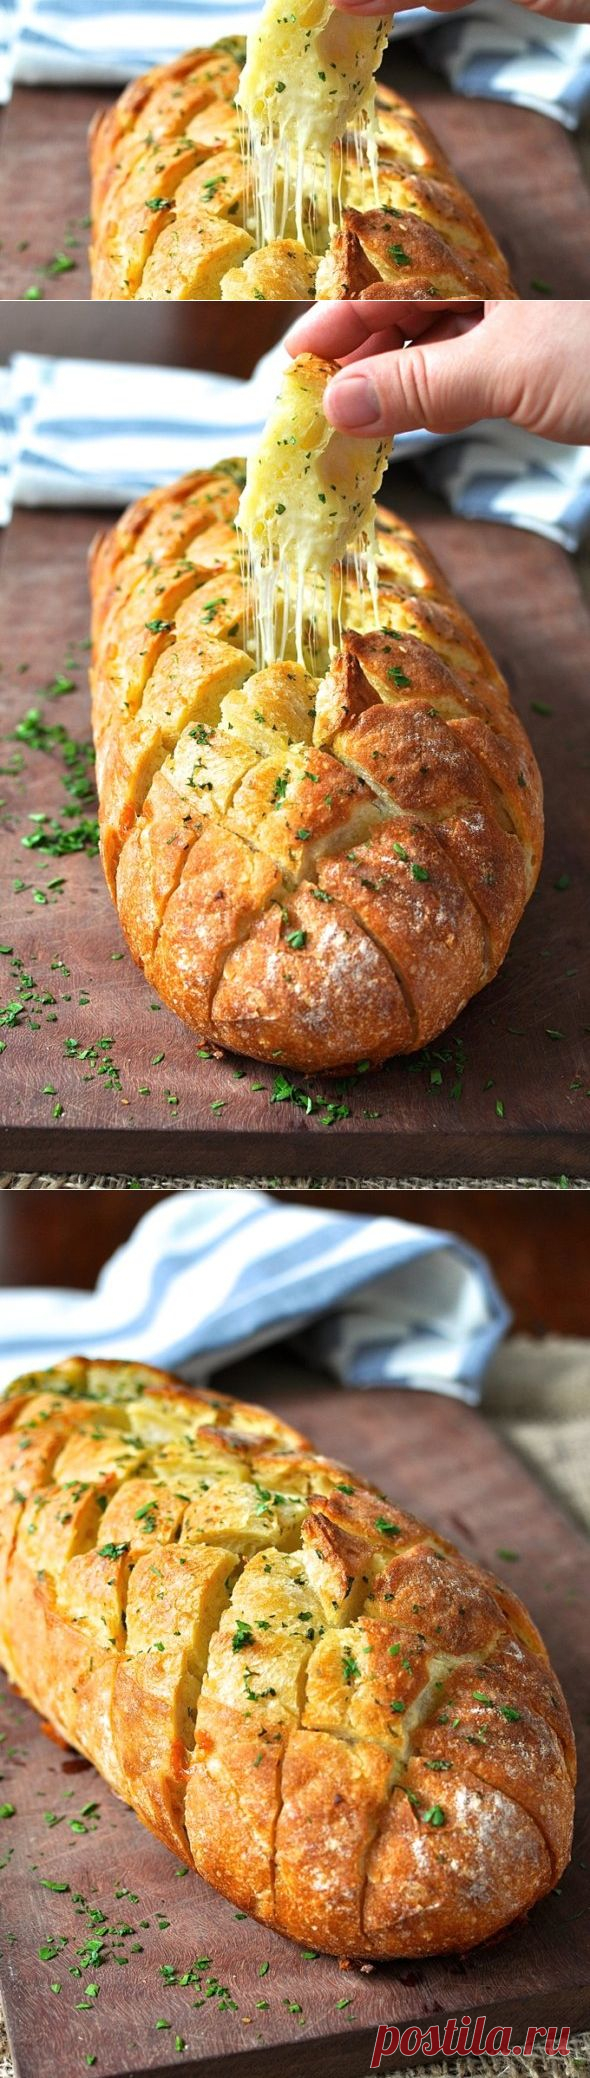 Сырно-чесночный хлеб - это вкусно и быстро! | Домохозяйки